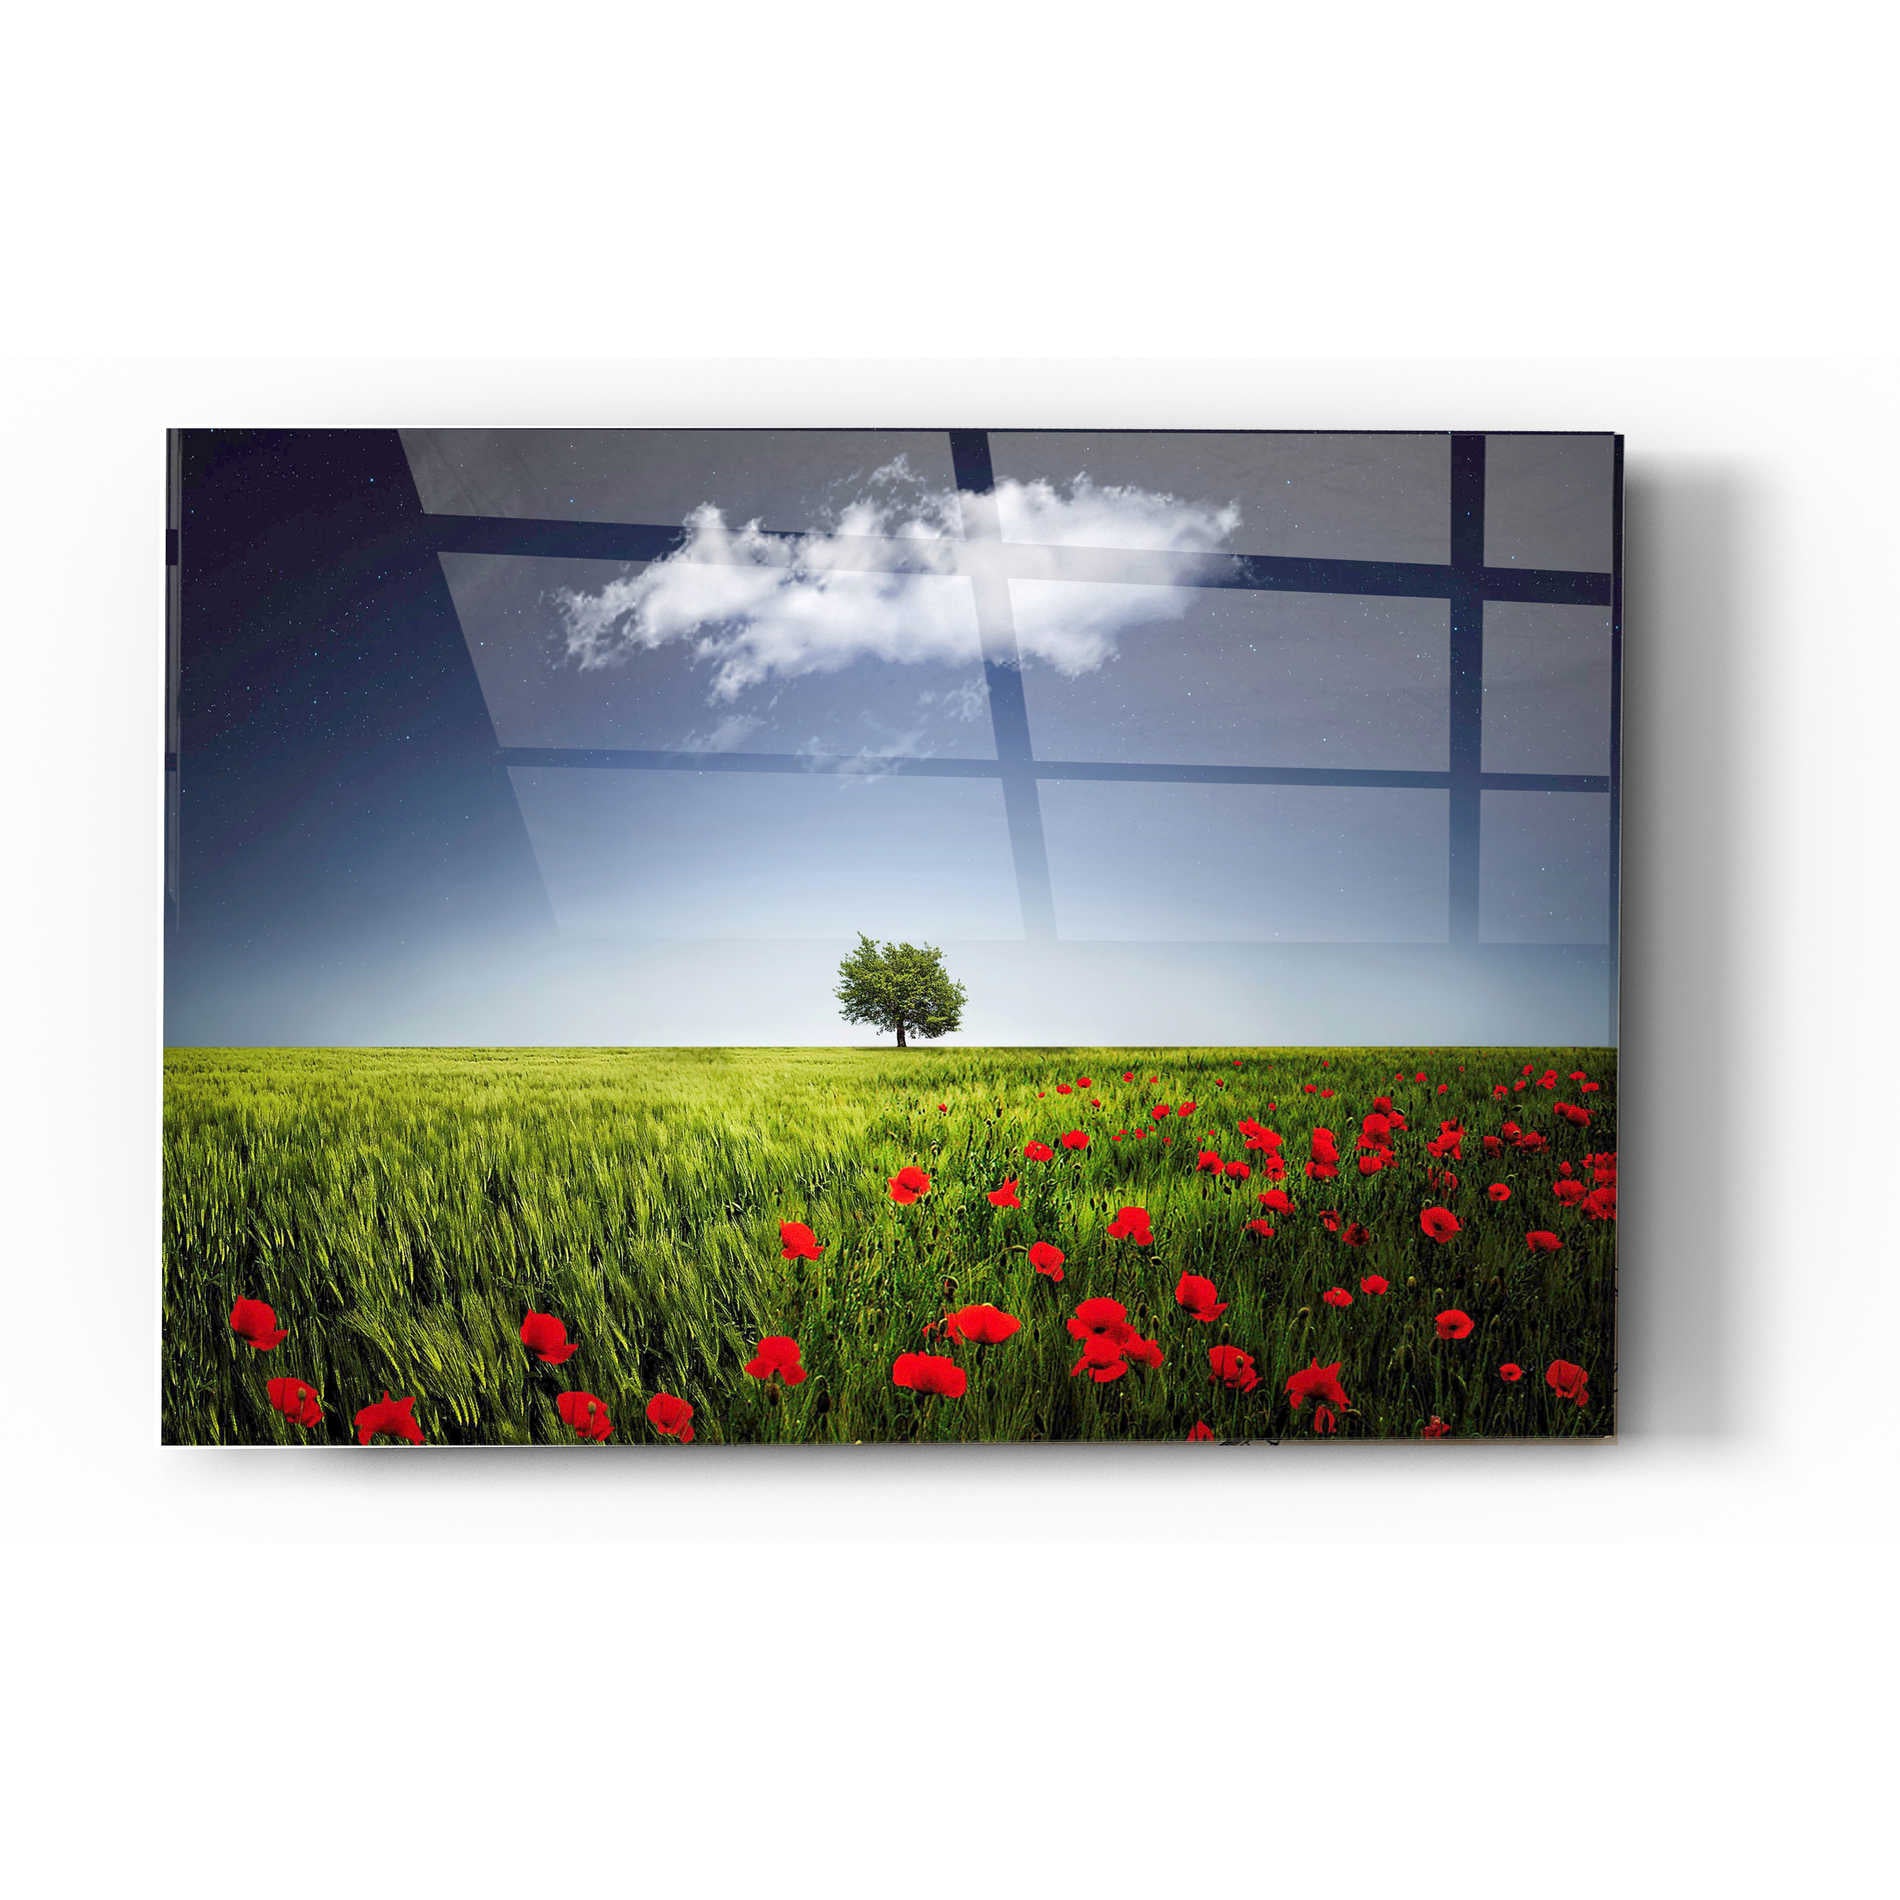 Epic Art "Lone Tree in a Poppy Field" Acrylic Glass Wall Art,12 x 16